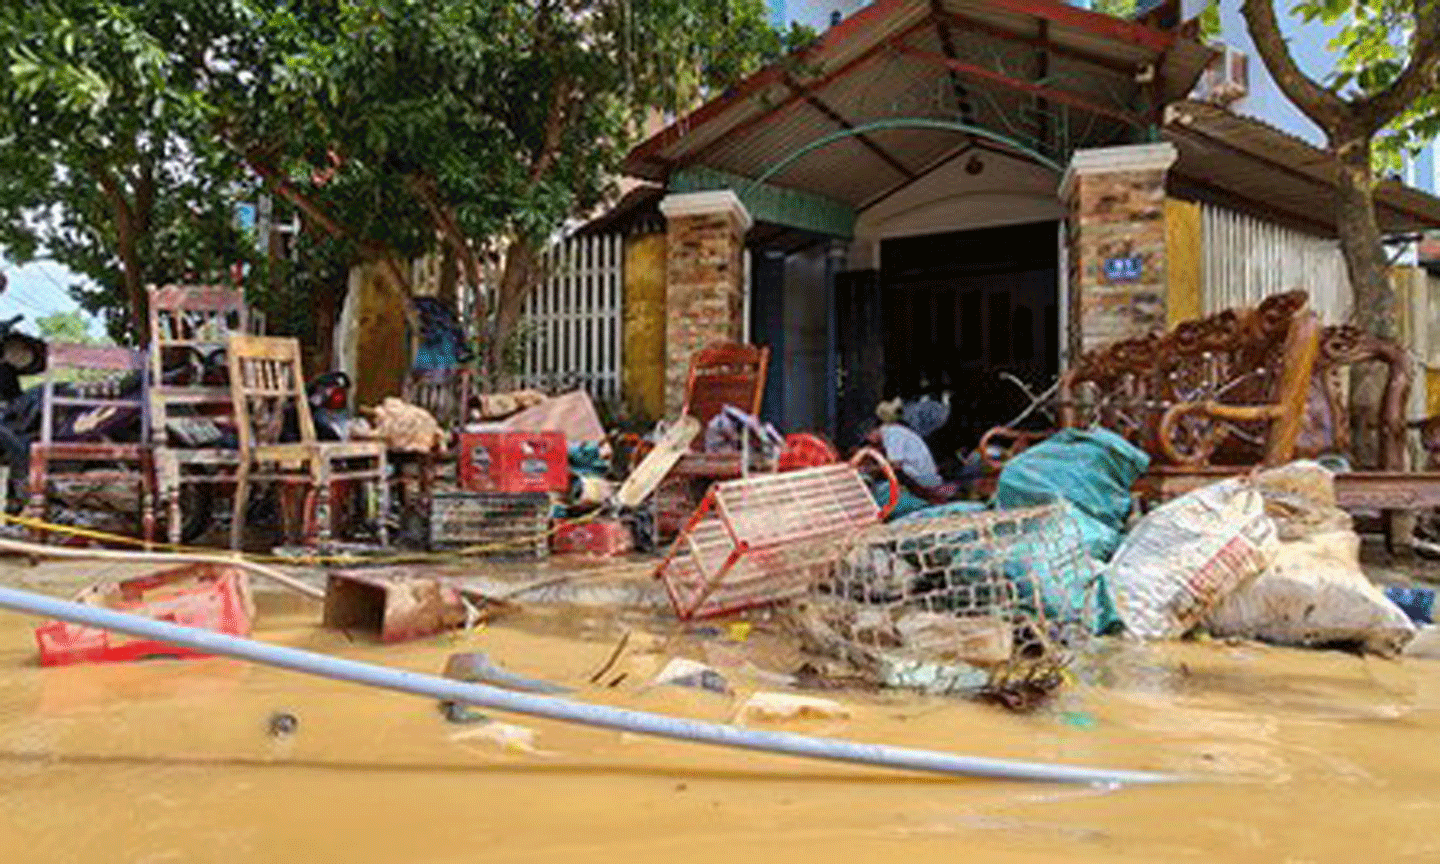 Người dân ở thị trấn Kiến Giang, huyện Lệ Thủy, Quảng Bình dọn dẹp nhà cửa sau khi lũ rút. Ảnh: MINH PHONG